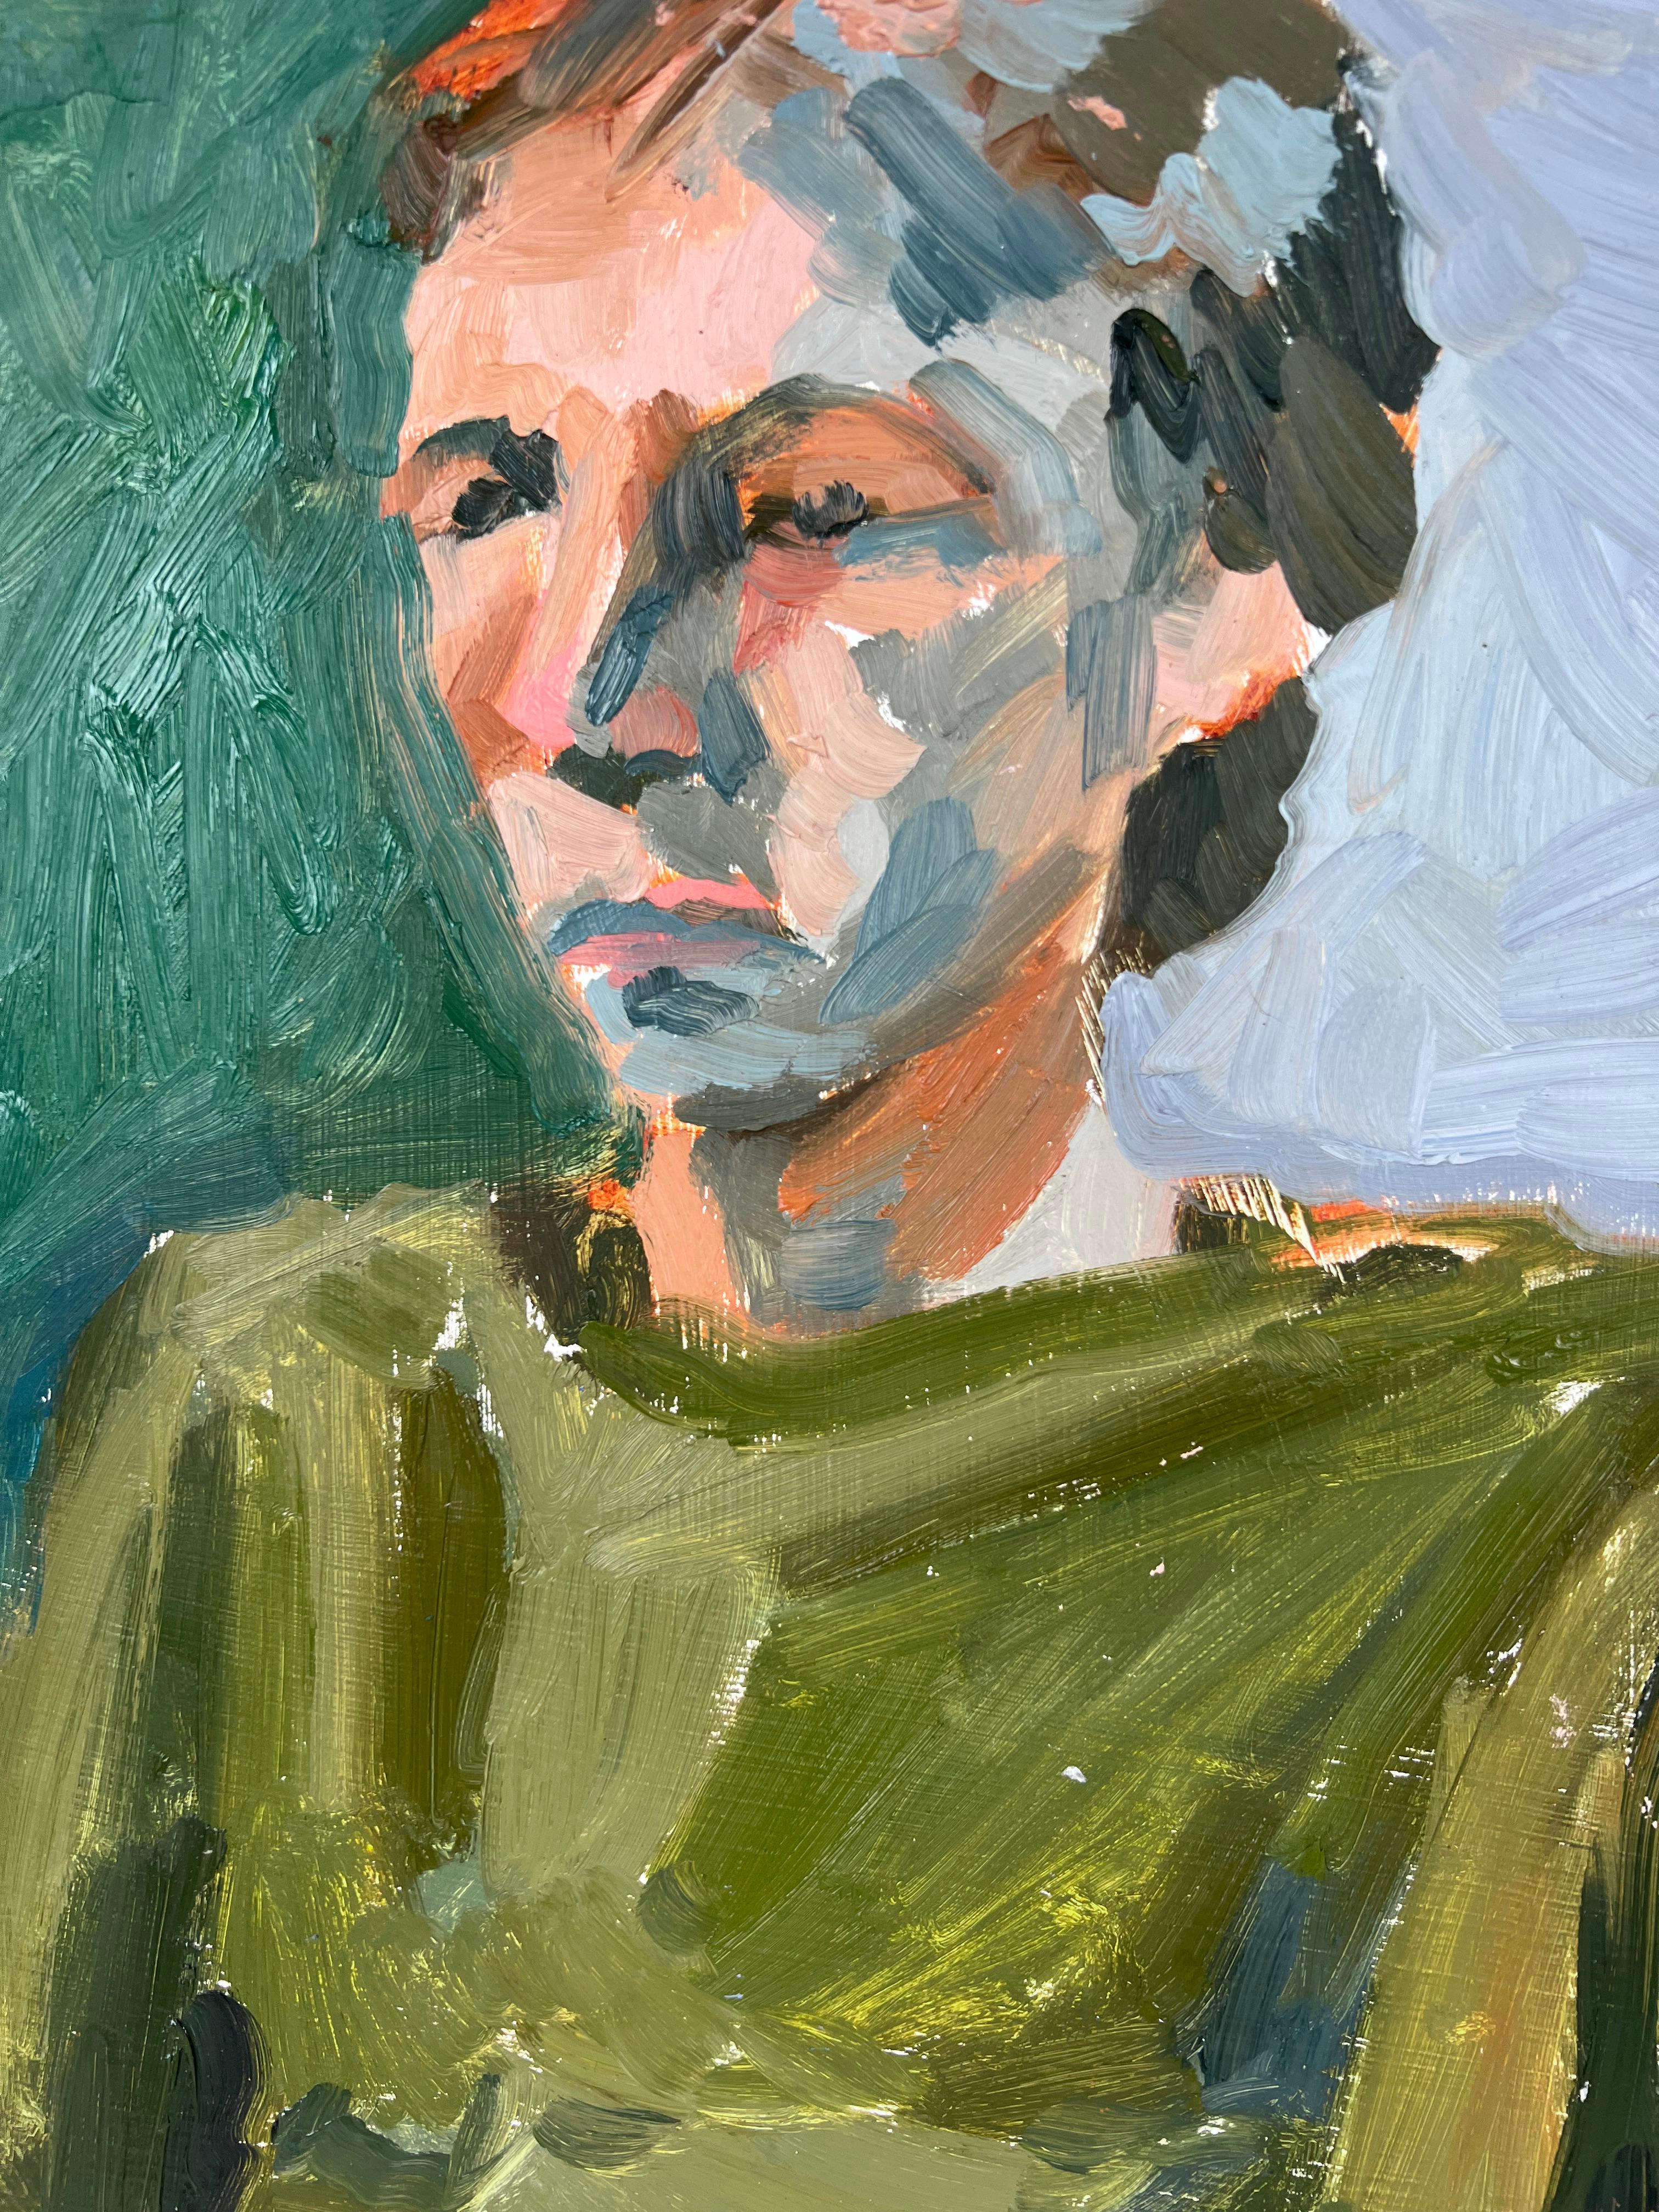 École d'expressionnisme abstrait « Man Bay Area » (école de figuration)

Homme assis, un portrait abstrait de l'artiste de San Francisco Heather Speck (américaine, B-1978). Le sujet est peint avec des couleurs vives et de larges touches de vert, de